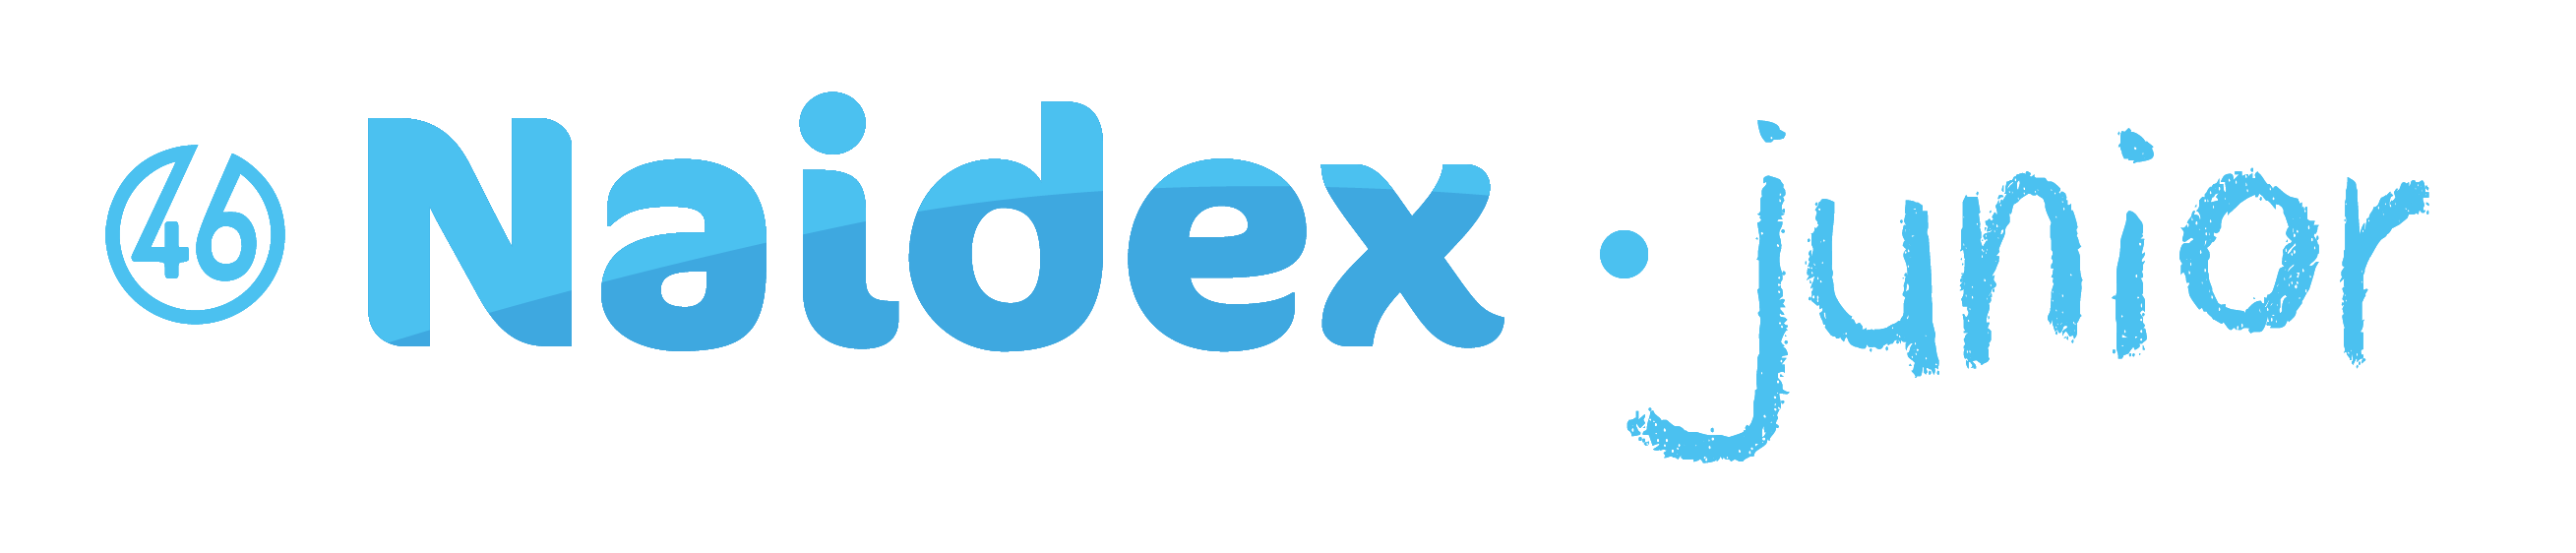 Naidex Junior Logo